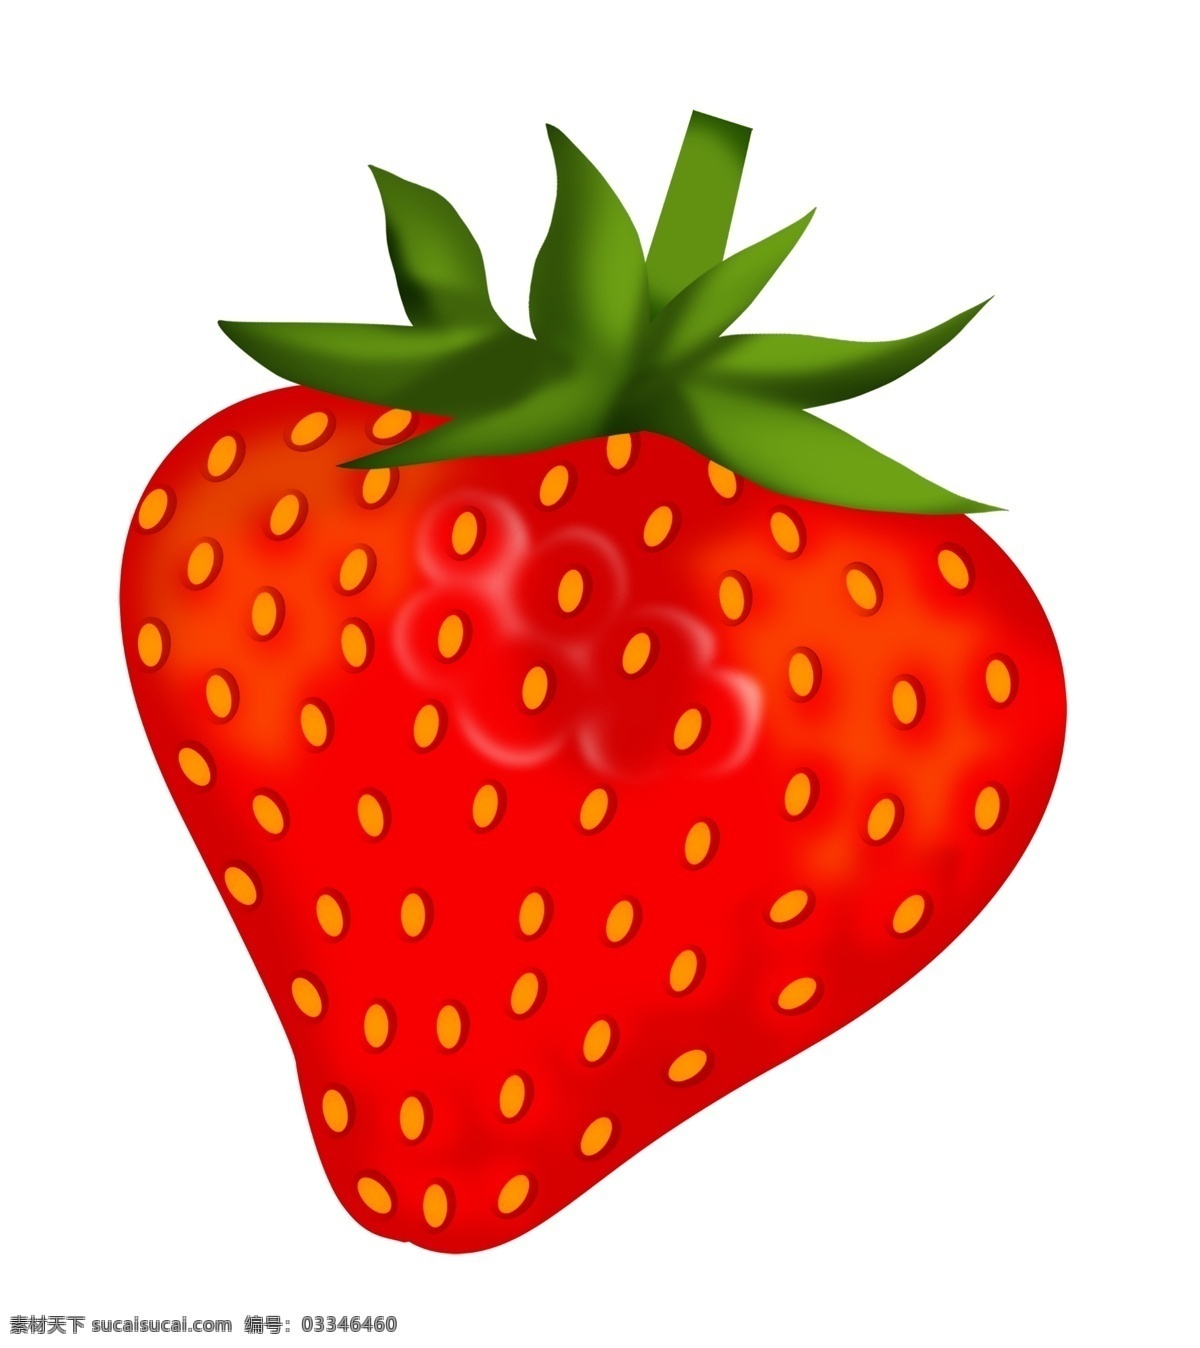 卡通 新鲜 草莓 插画 卡通草莓插画 新鲜的草莓 红色草莓 仿真的草莓 水果插画 美味 水果